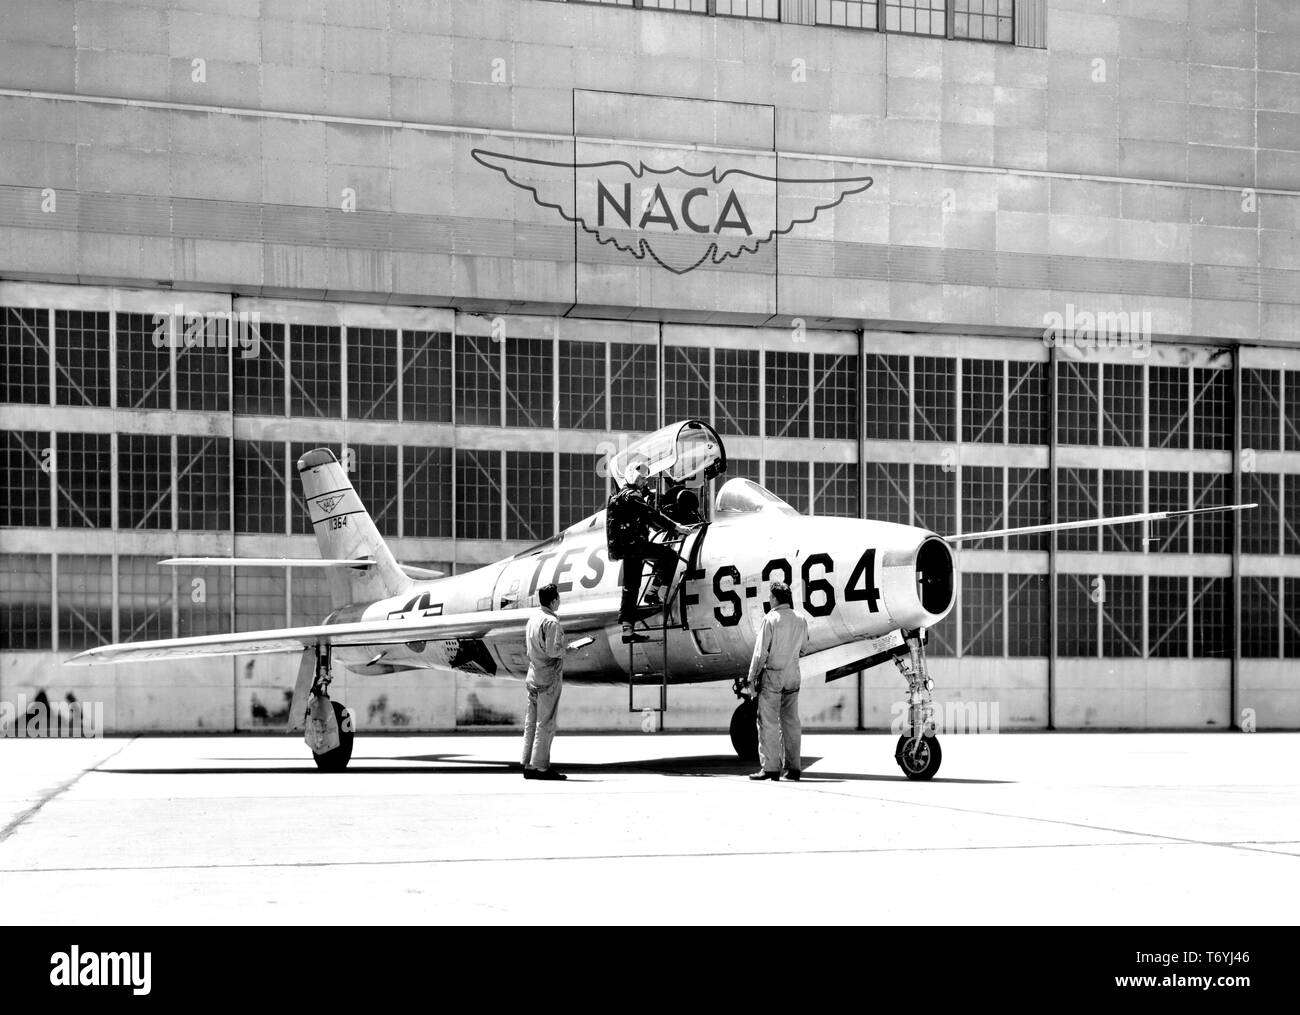 Foto von der United States Air Force Republik F84F Thunderjet jagdbomber an der NACA Ames Aeronautical Laboratory, Moffett Field, Kalifornien, 16. September 1954. Mit freundlicher Genehmigung der Nationalen Luft- und Raumfahrtbehörde (NASA). () Stockfoto